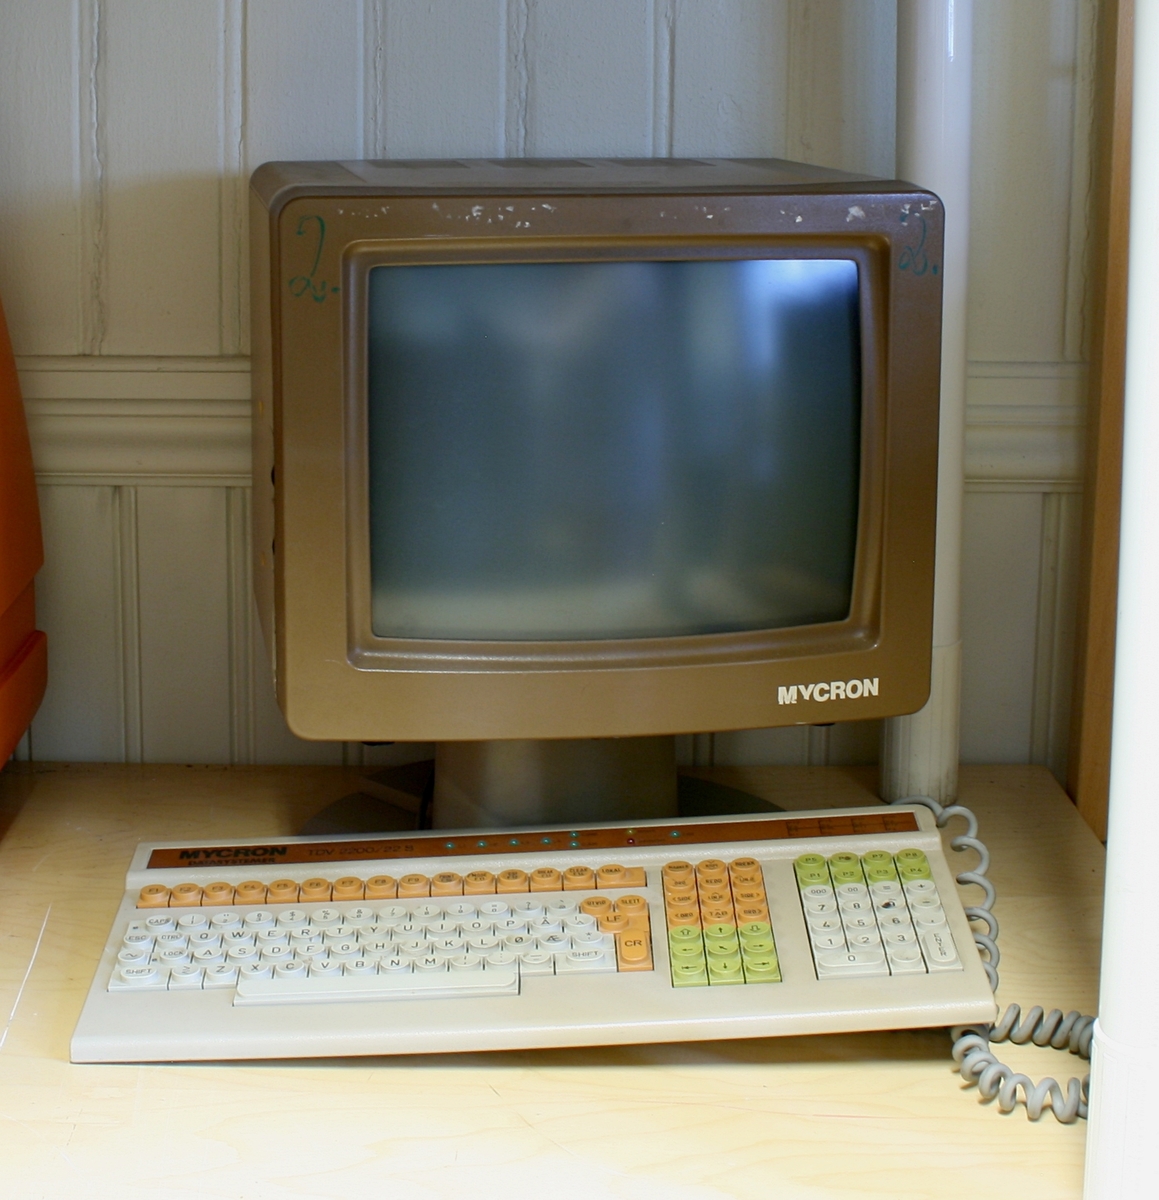 Datamaskin og tastatur, Mycron.